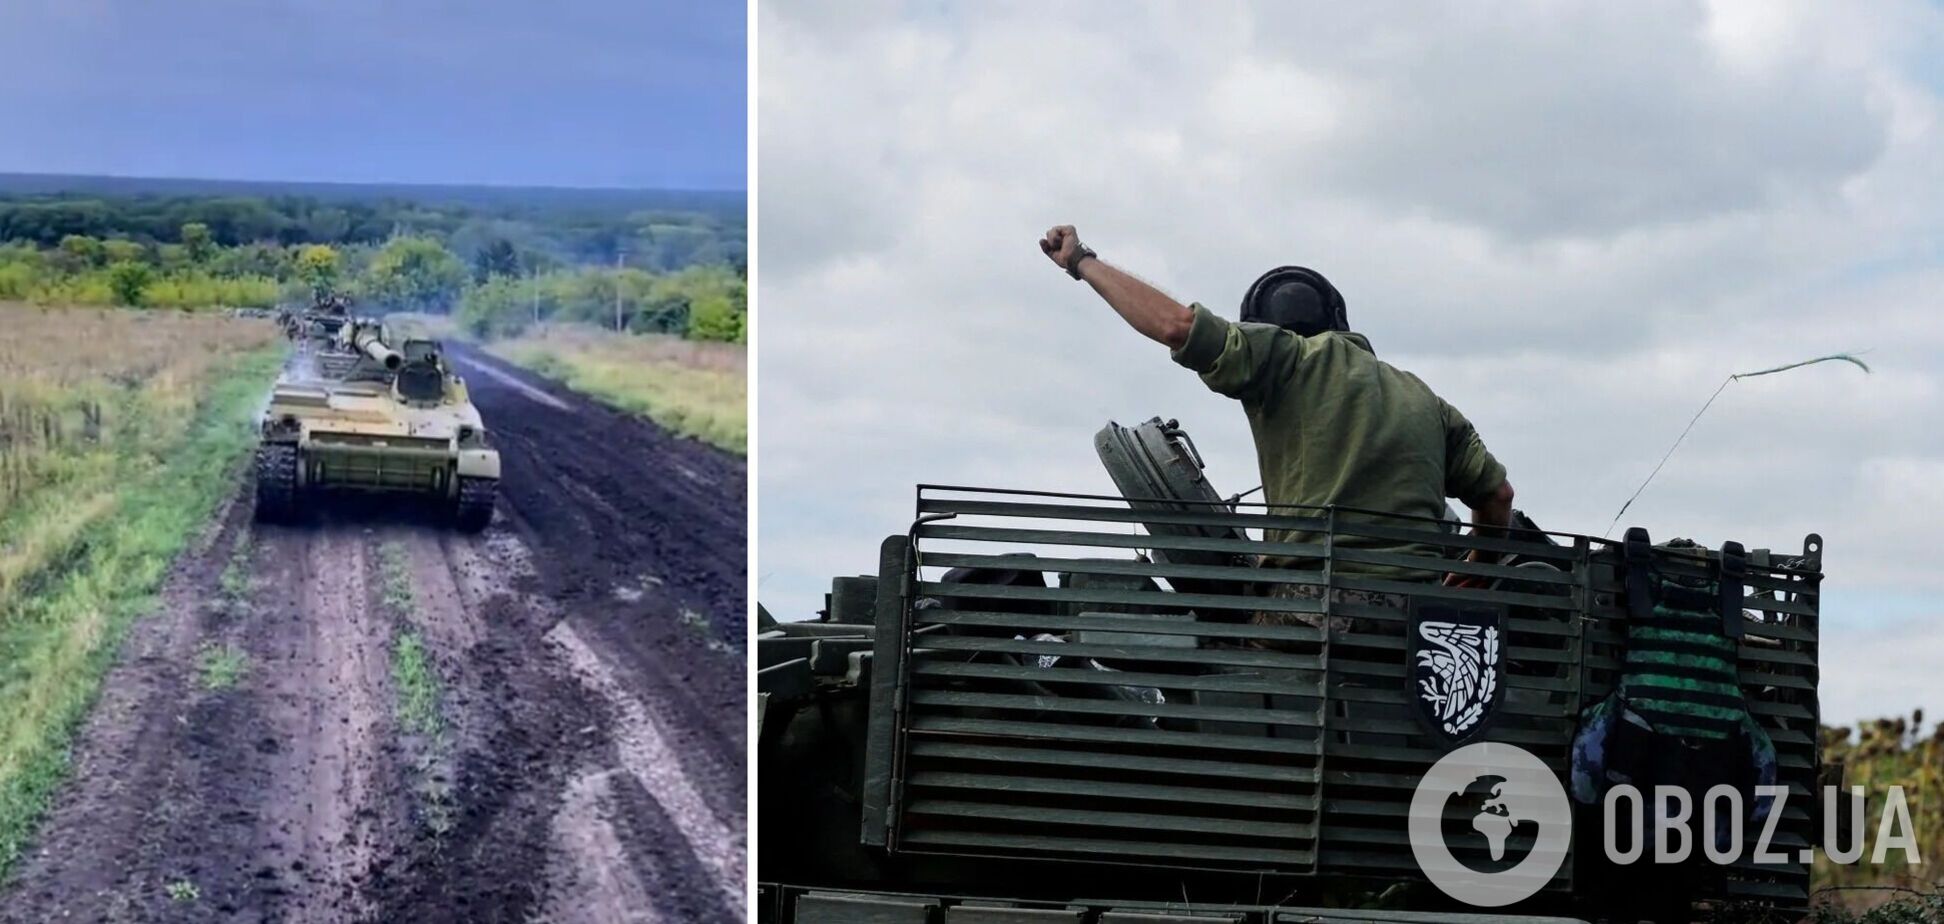 Защитники Украины затрофеили САУ 'Гиацинт-С' на Харьковщине: будет теперь бить оккупантов. Видео